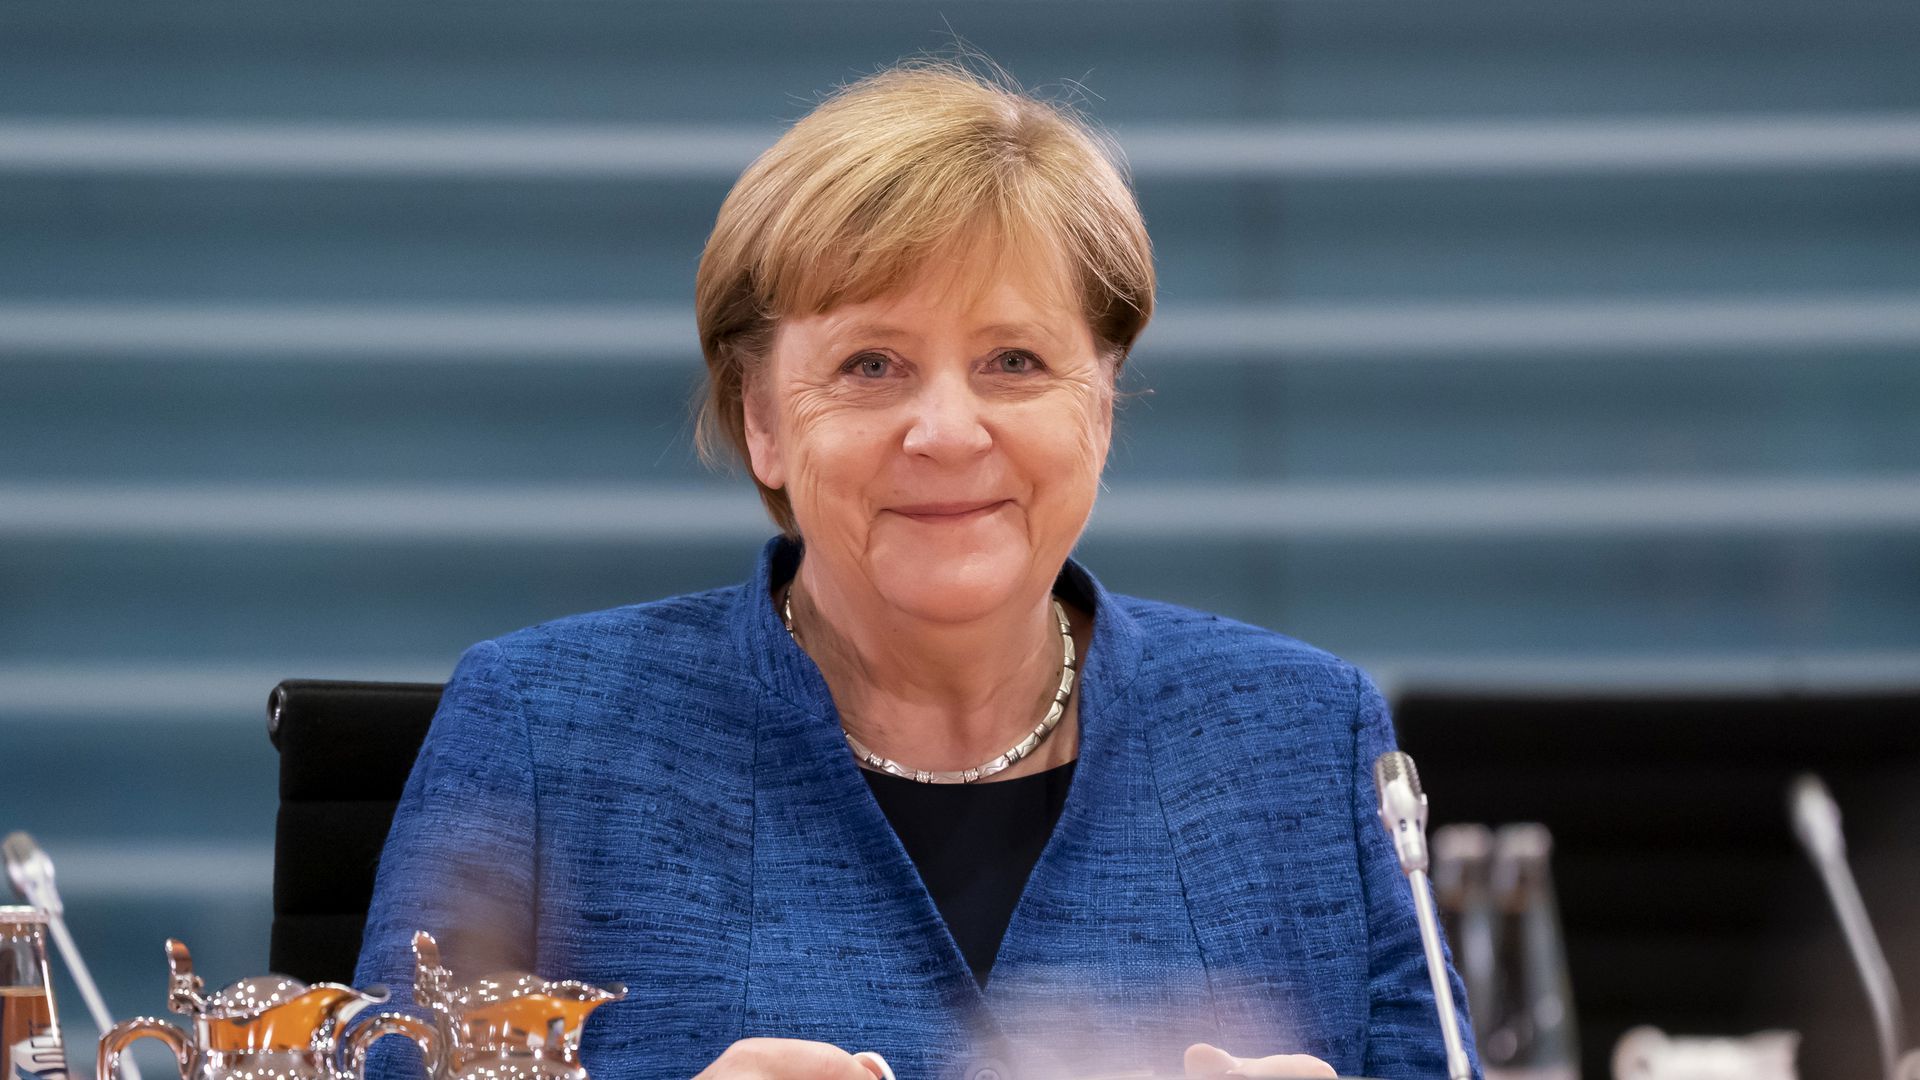  Angela Merkel Hintergrundbild 1920x1080. Angela Merkel wurde beim Einkaufen beklaut